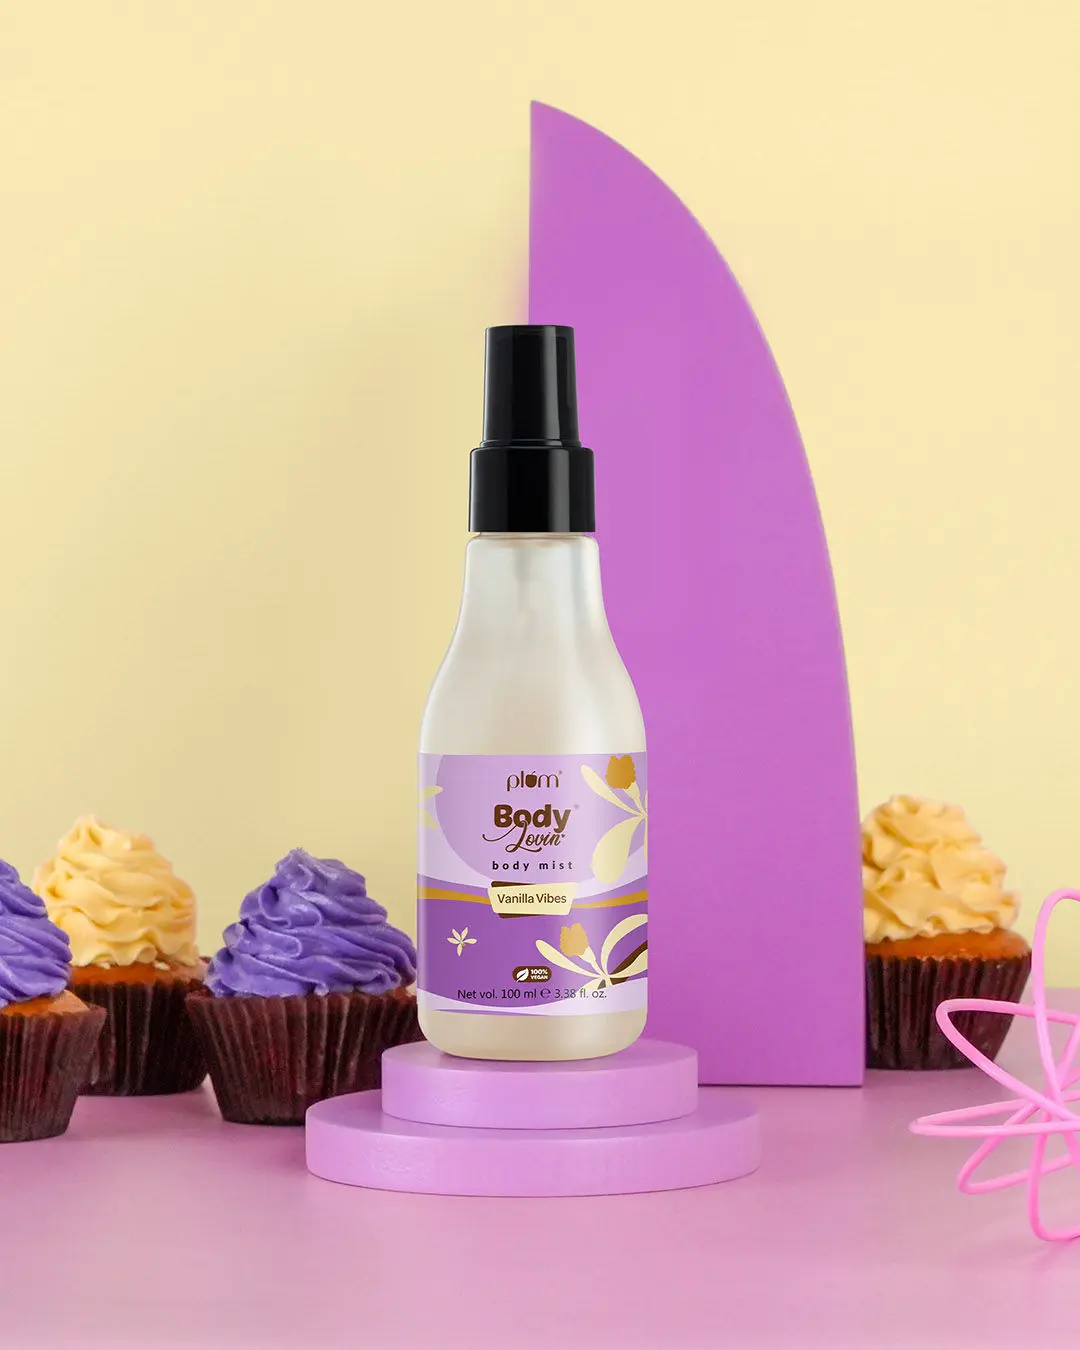 Plum BodyLovin' Vanilla Vibes Body Mist (100 ml) | Vanilla Fragrance | Perfume Body Spray